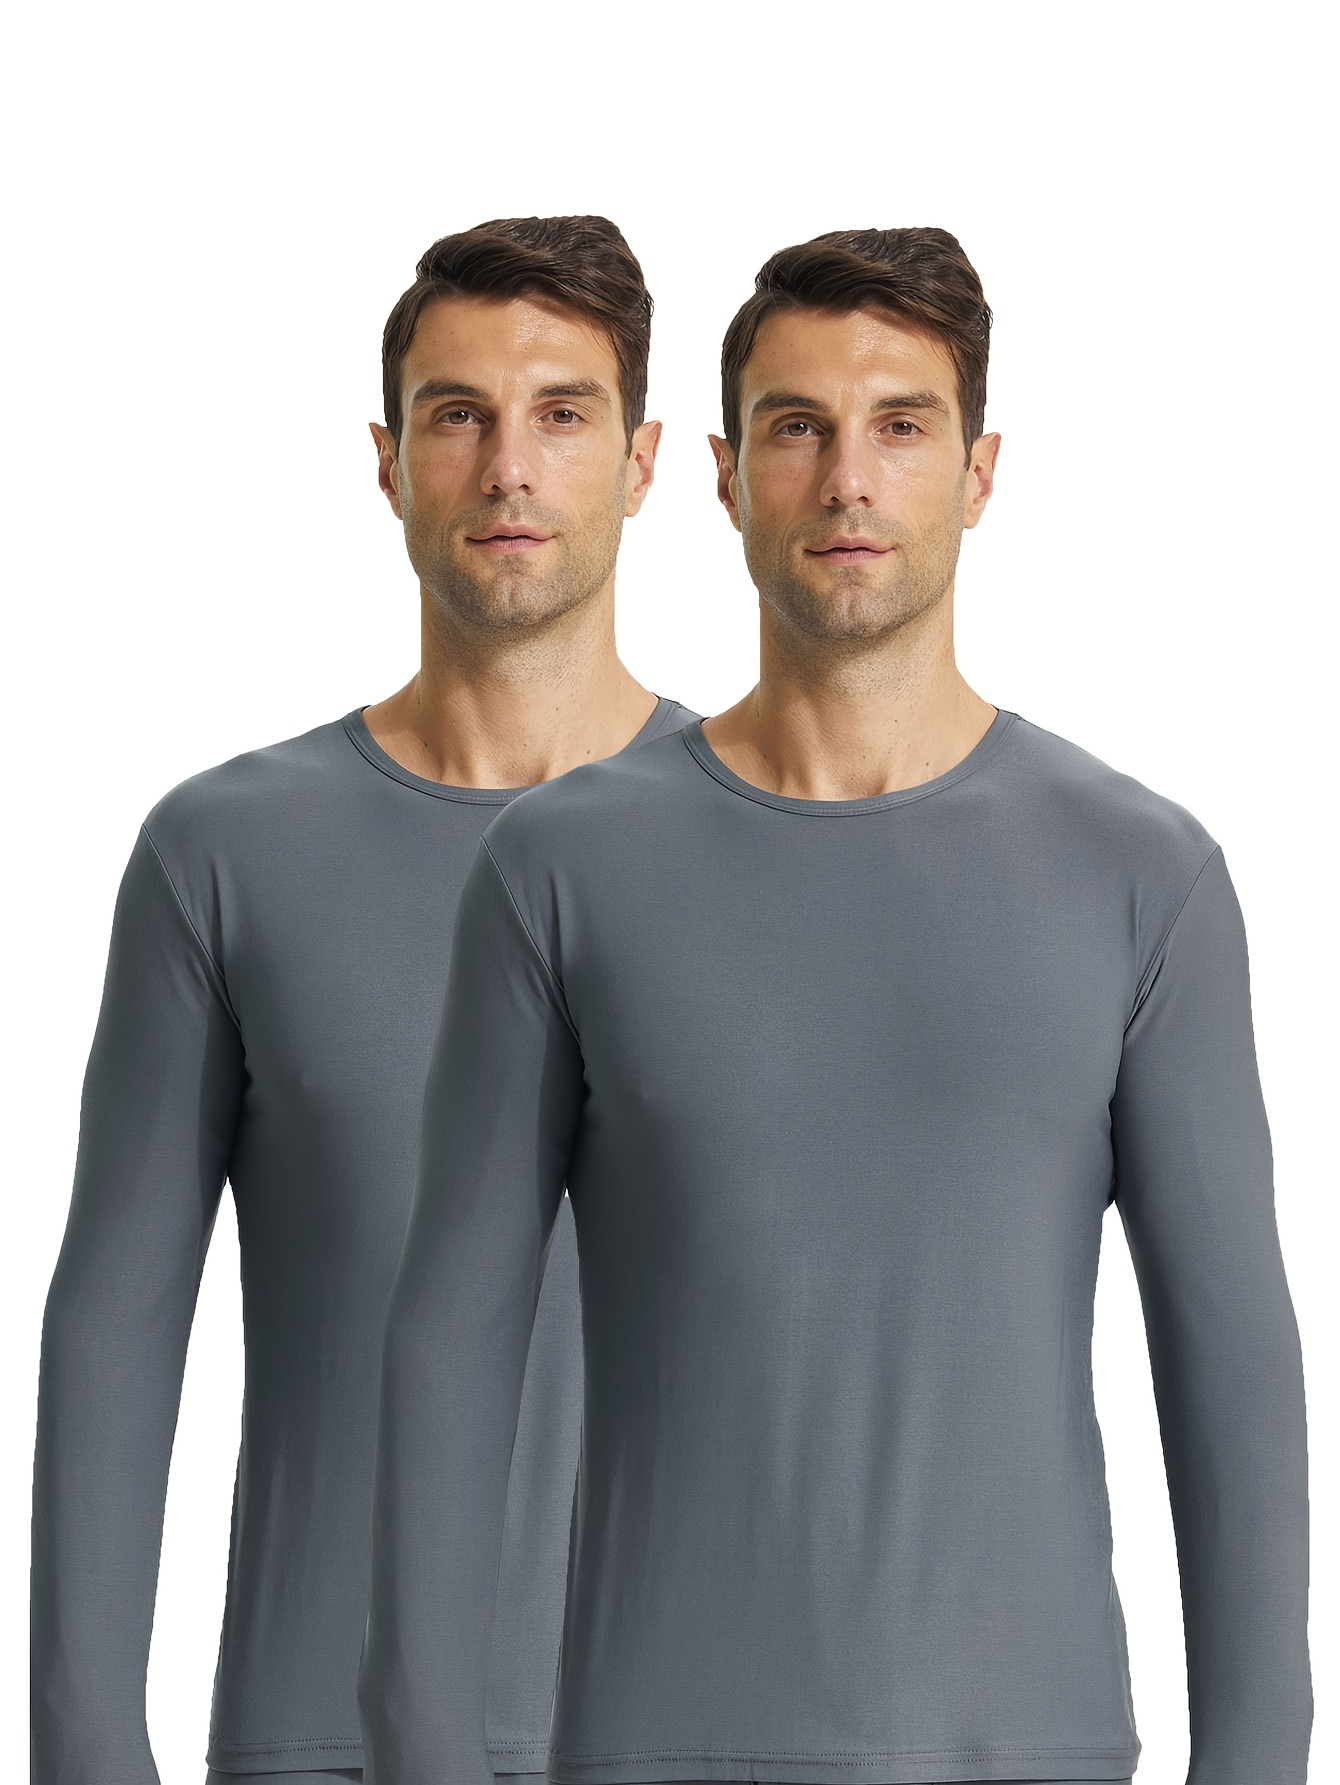 Men's Baselayer Shirts - Thermal Tops